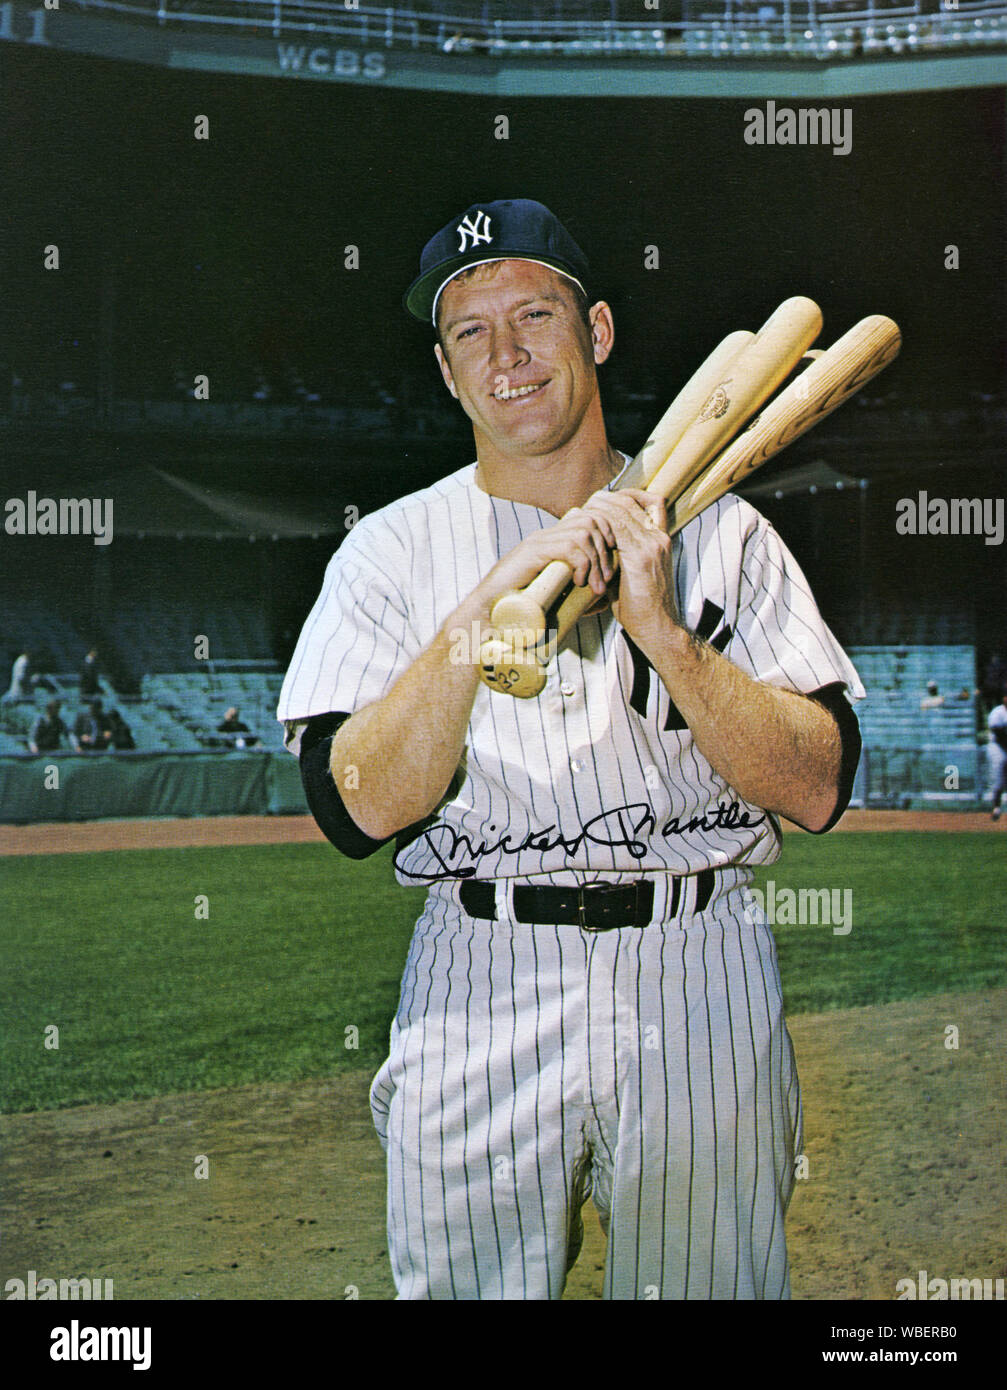 Poste fotografia di Mickey mantello il leggendario New York Yankee giocatore di baseball degli anni cinquanta e sessanta. Foto Stock